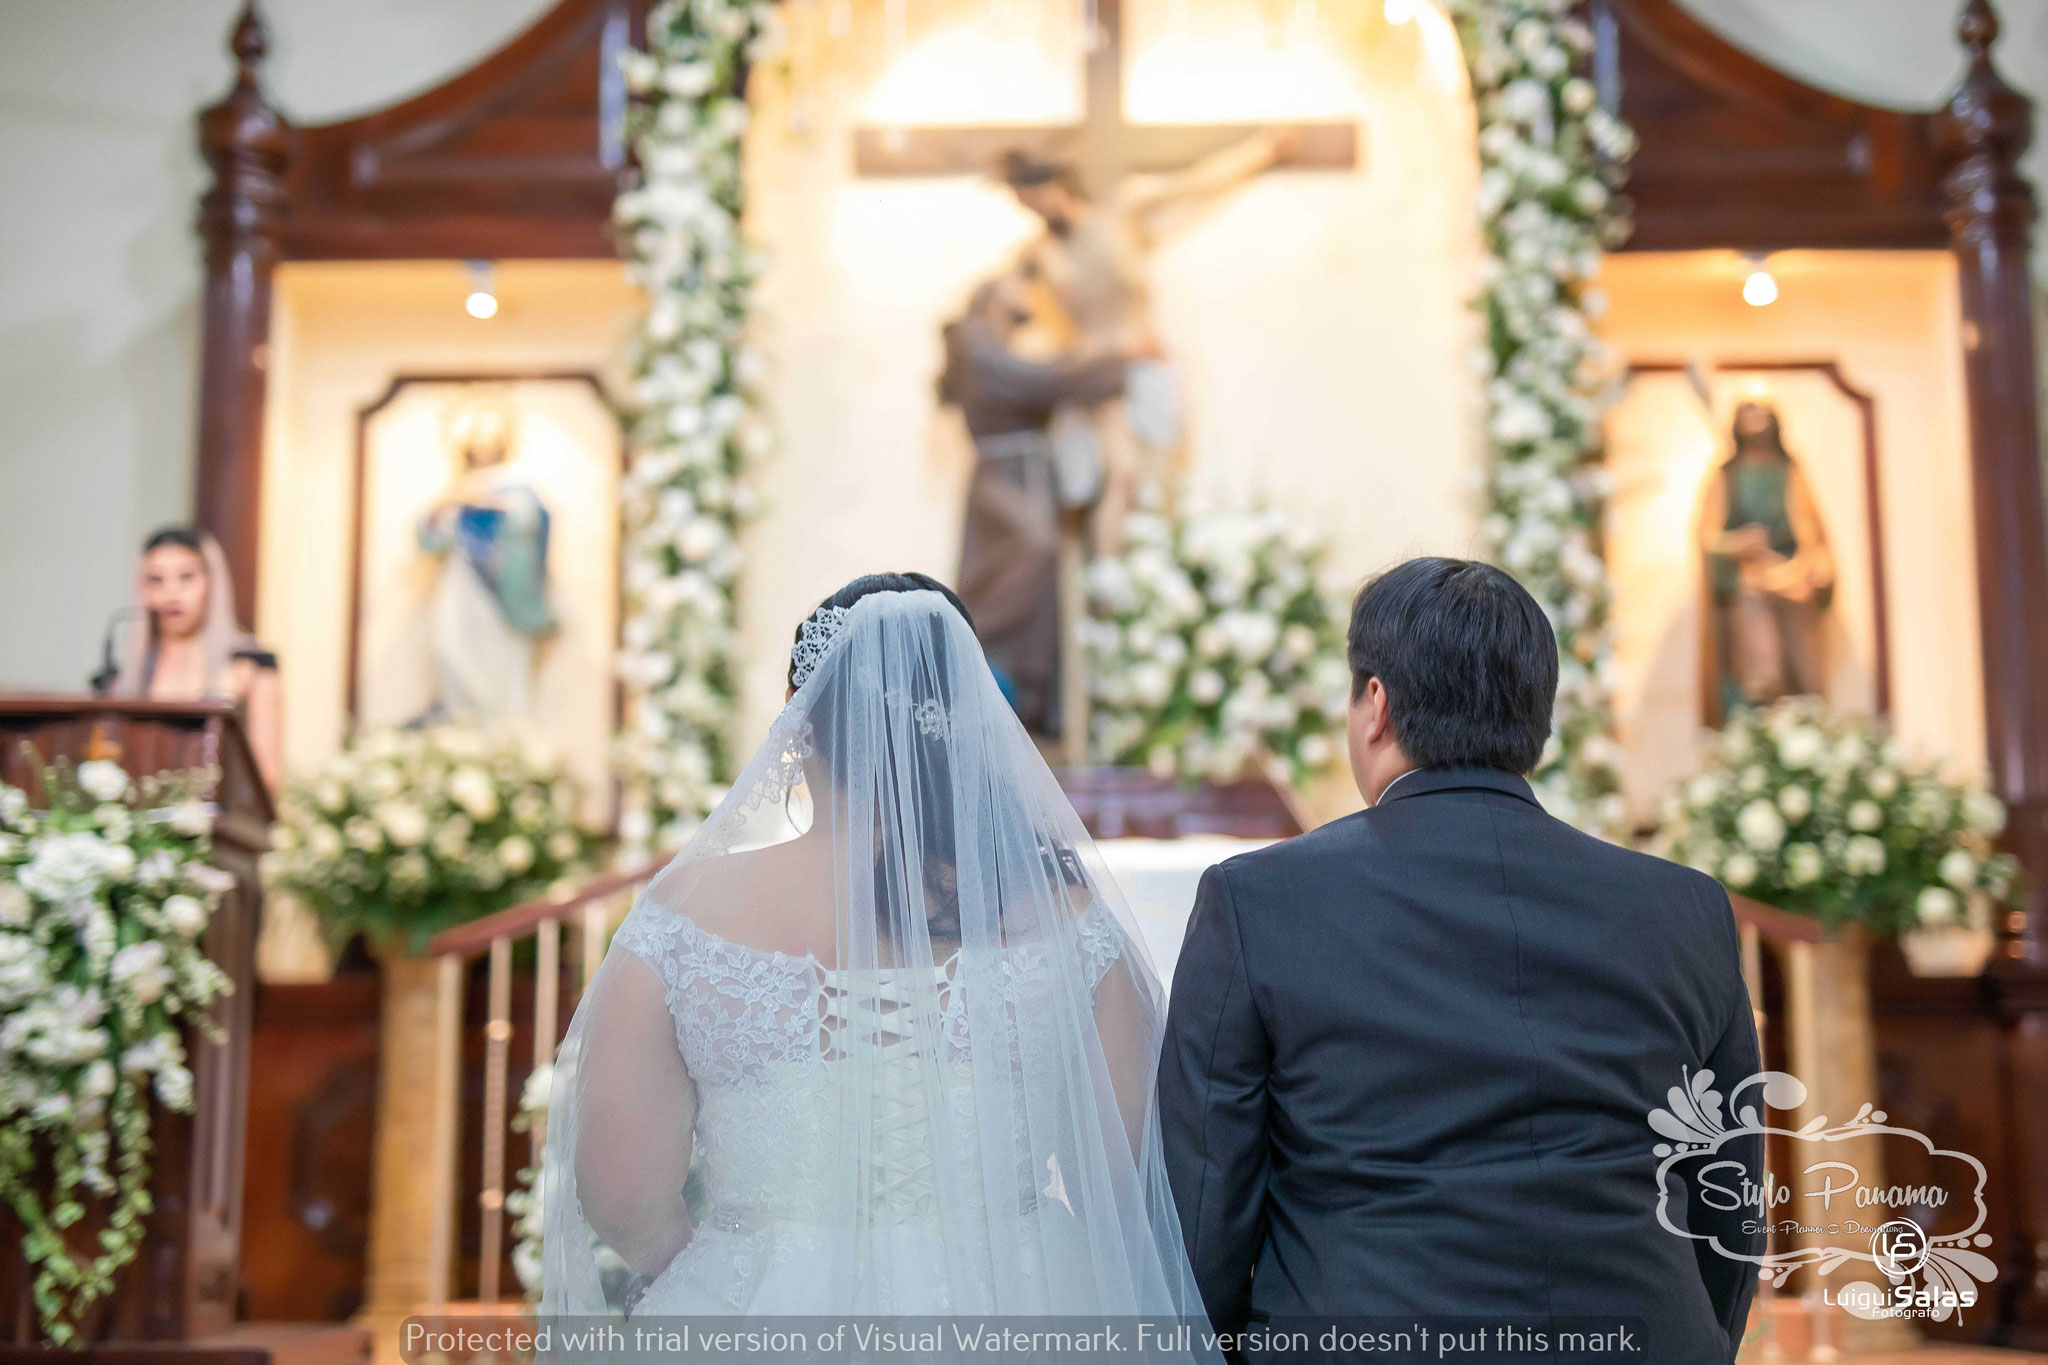 Decoración de Iglesias en bodas - Stylo Panama - Organizadores y  decoradores de bodas y eventos en Panama